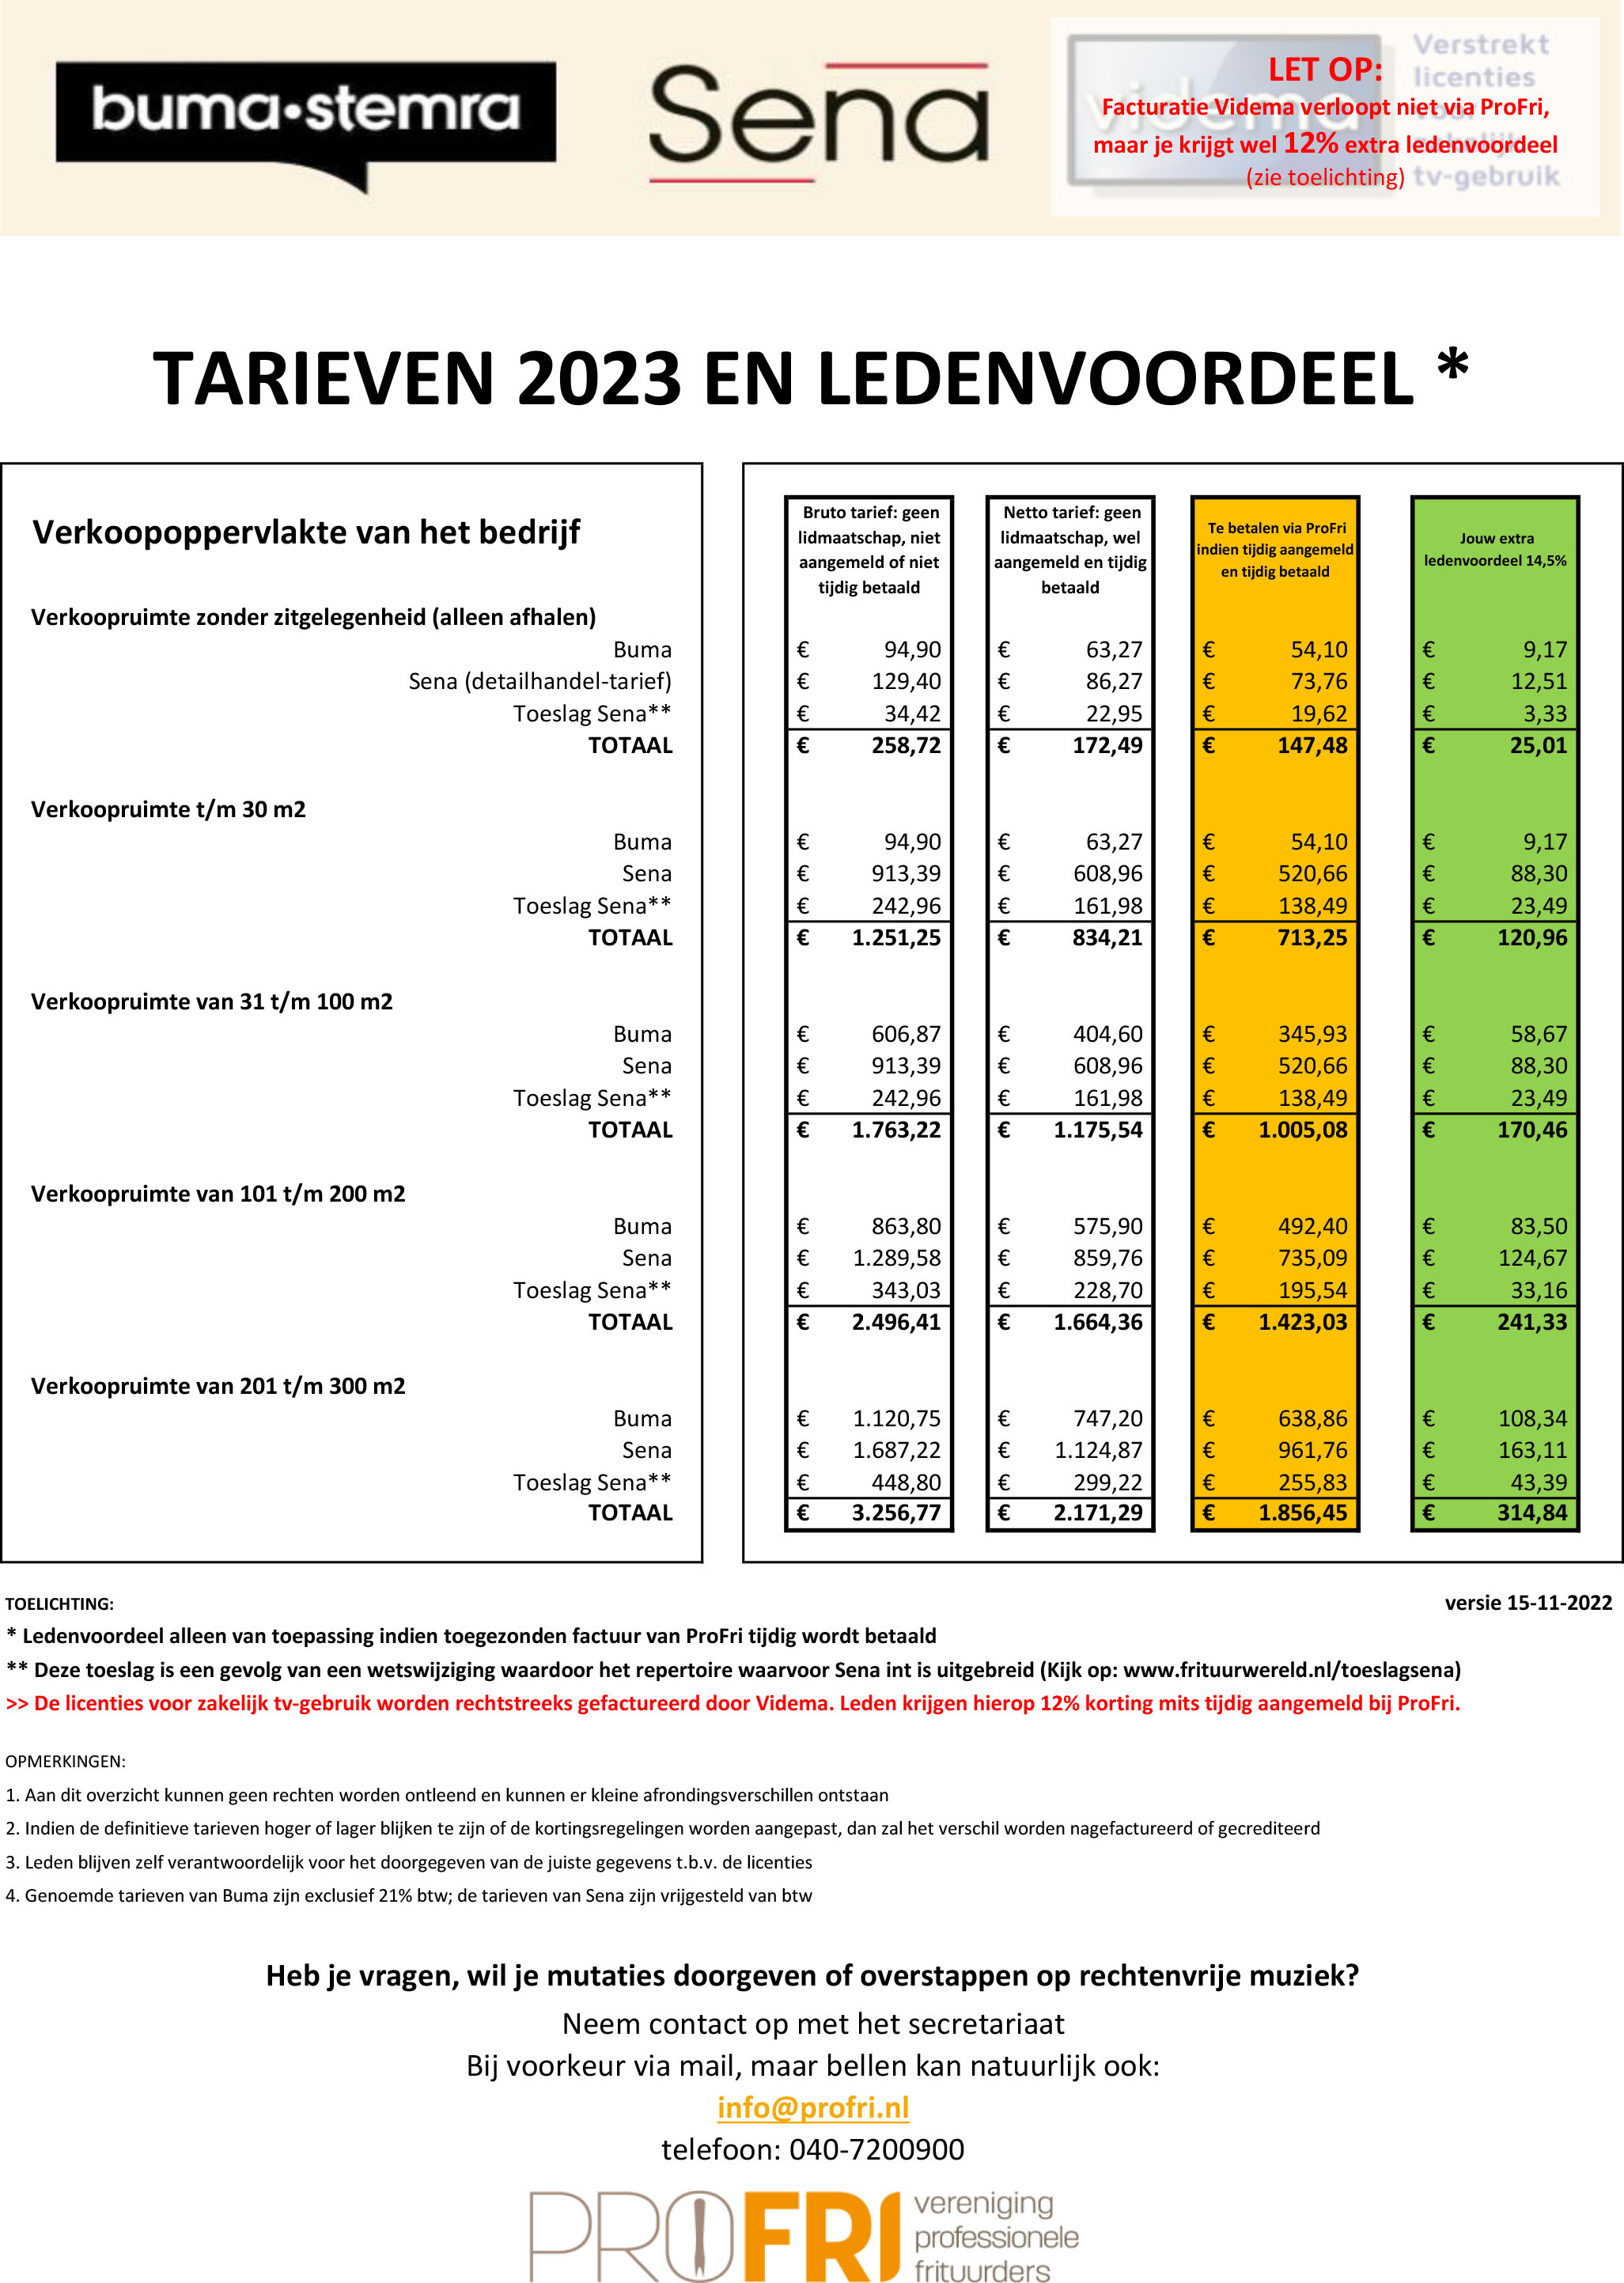 Overzicht tarieven BSV 2023 en leden voordeel